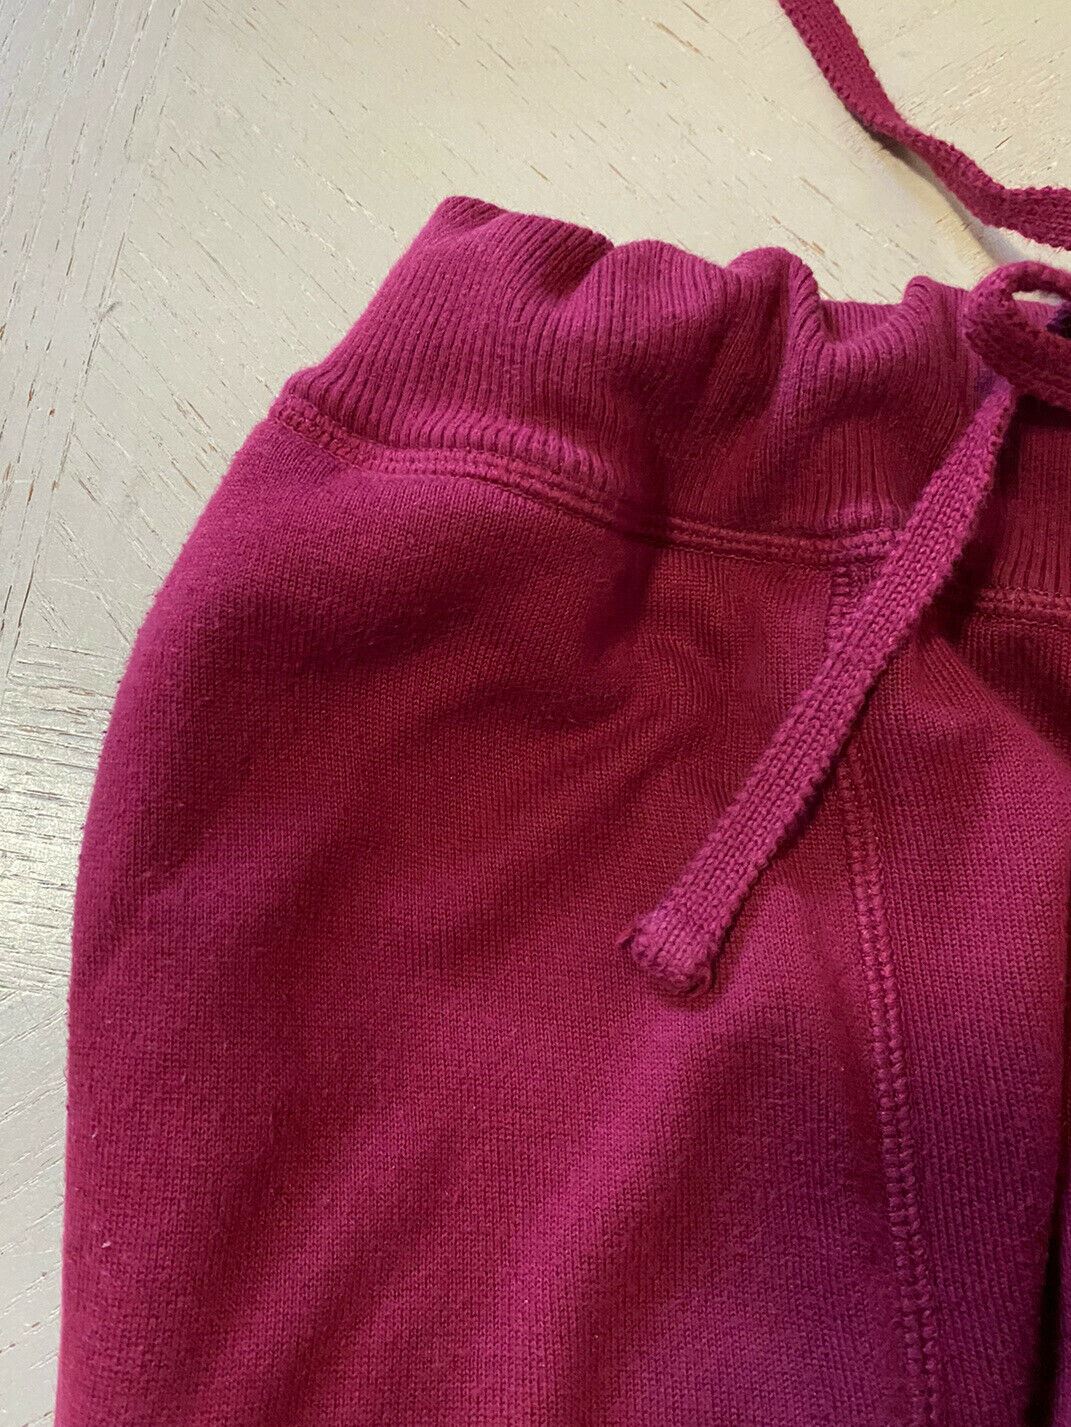 $1290 Мужские спортивные штаны Kiton, красные, размер S (48 Ei), Италия